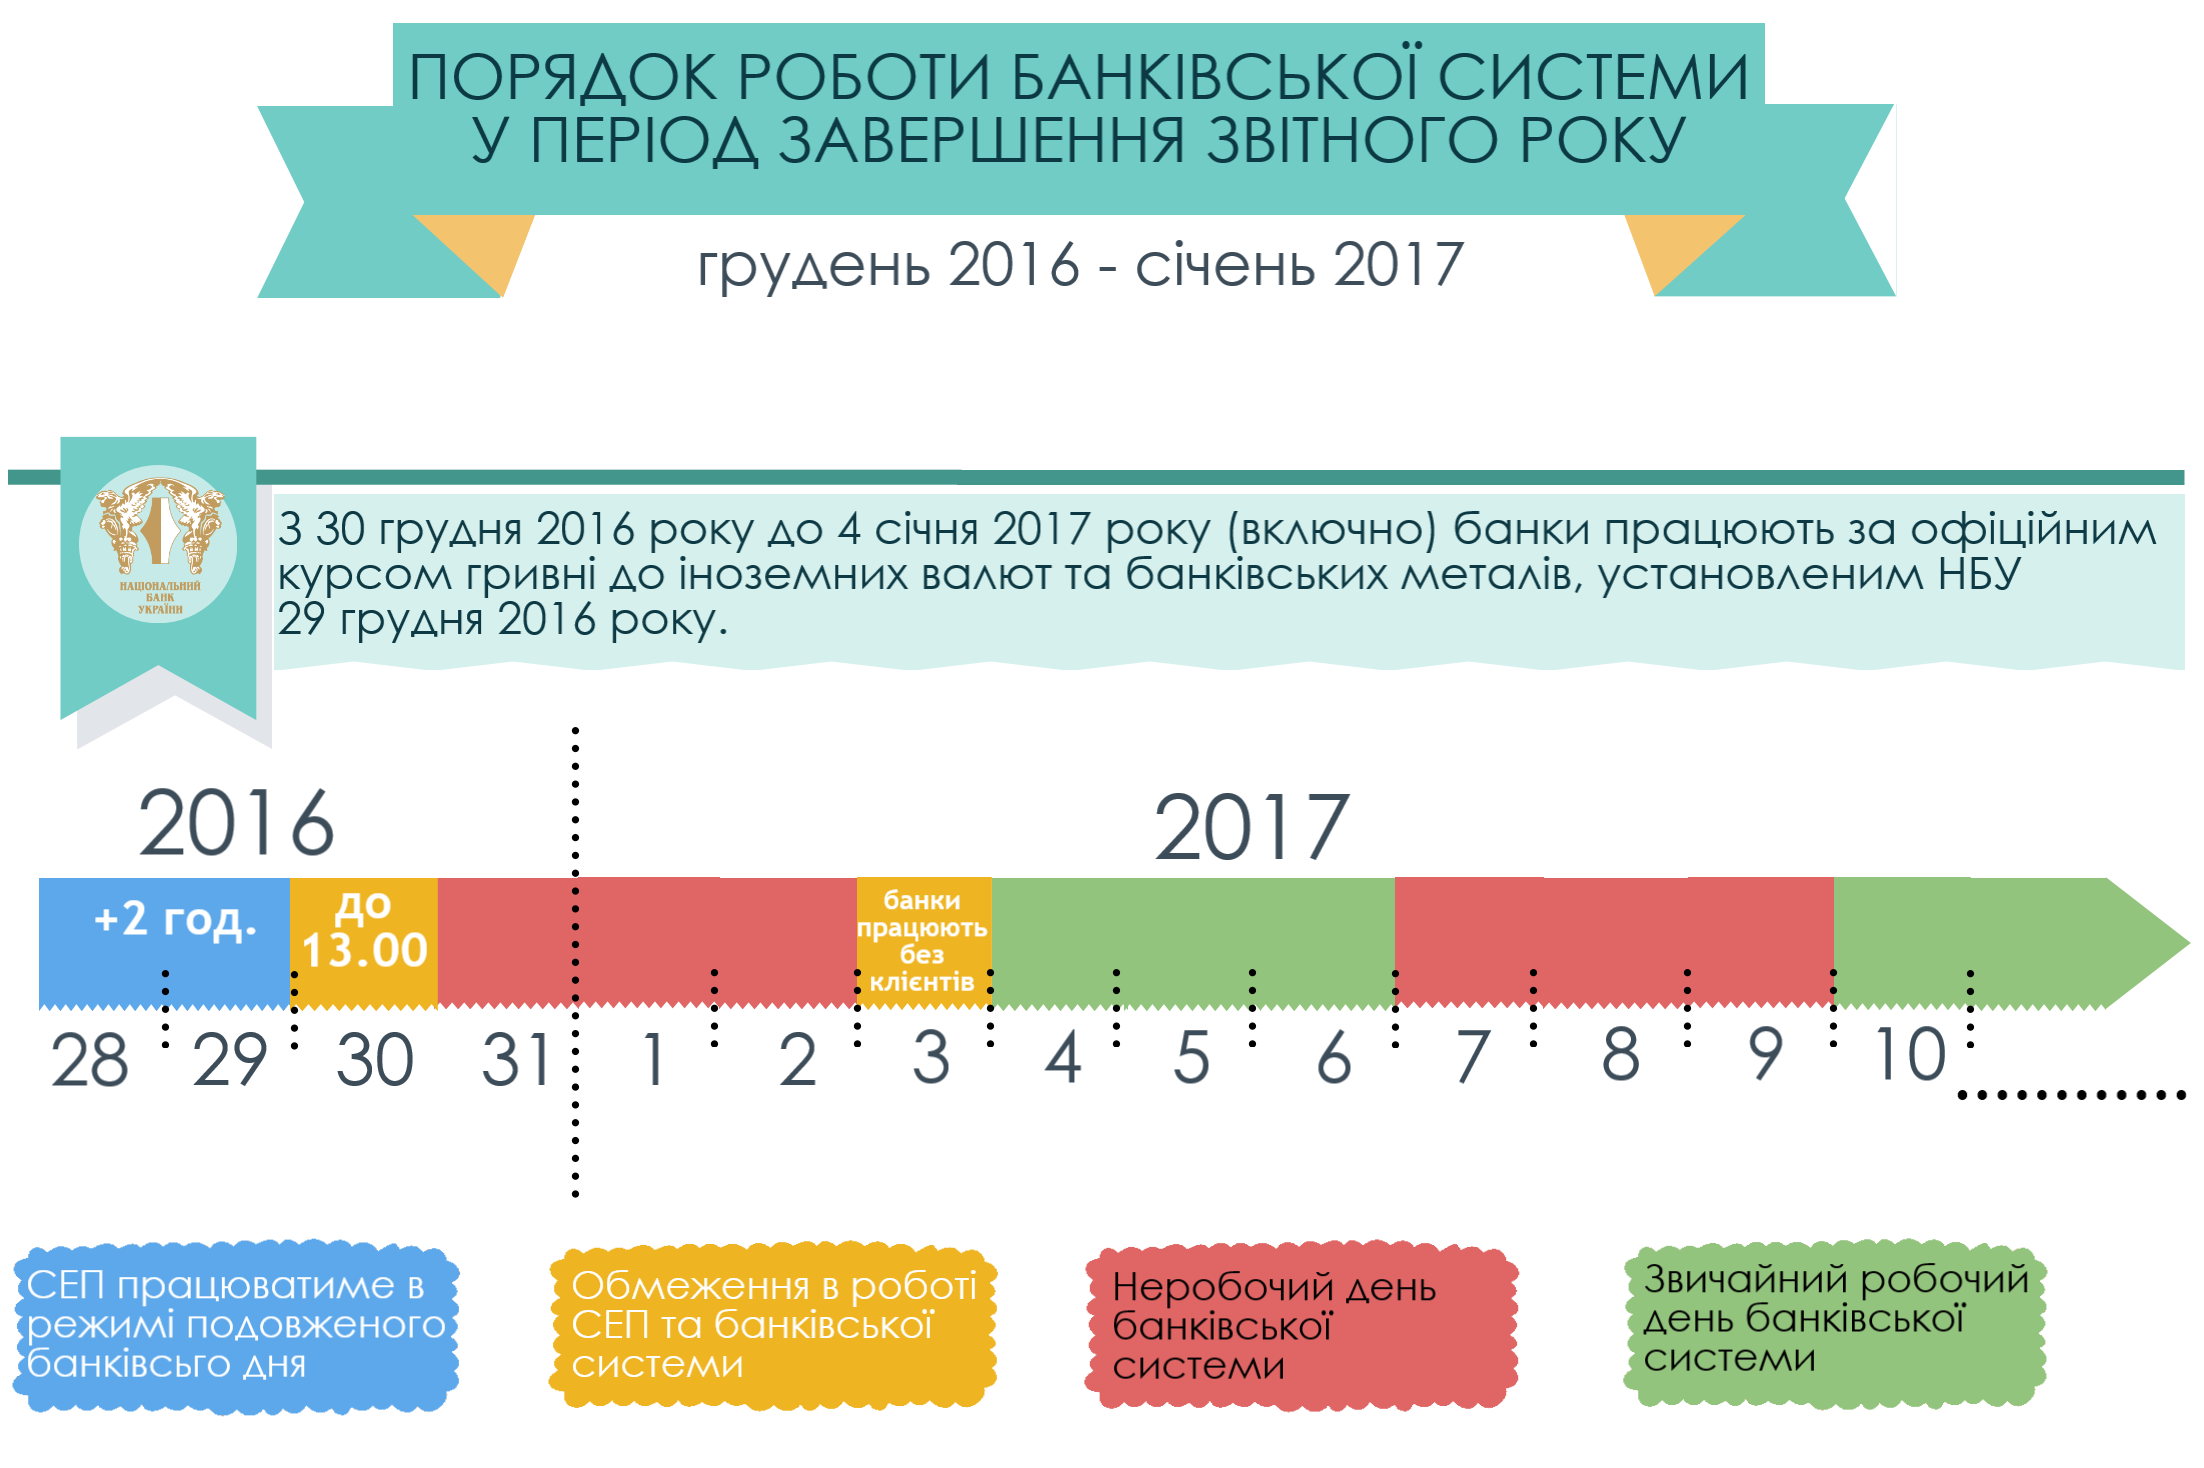 Як працюють банки на новорічні та різдвяні свята 2017 року в Україні